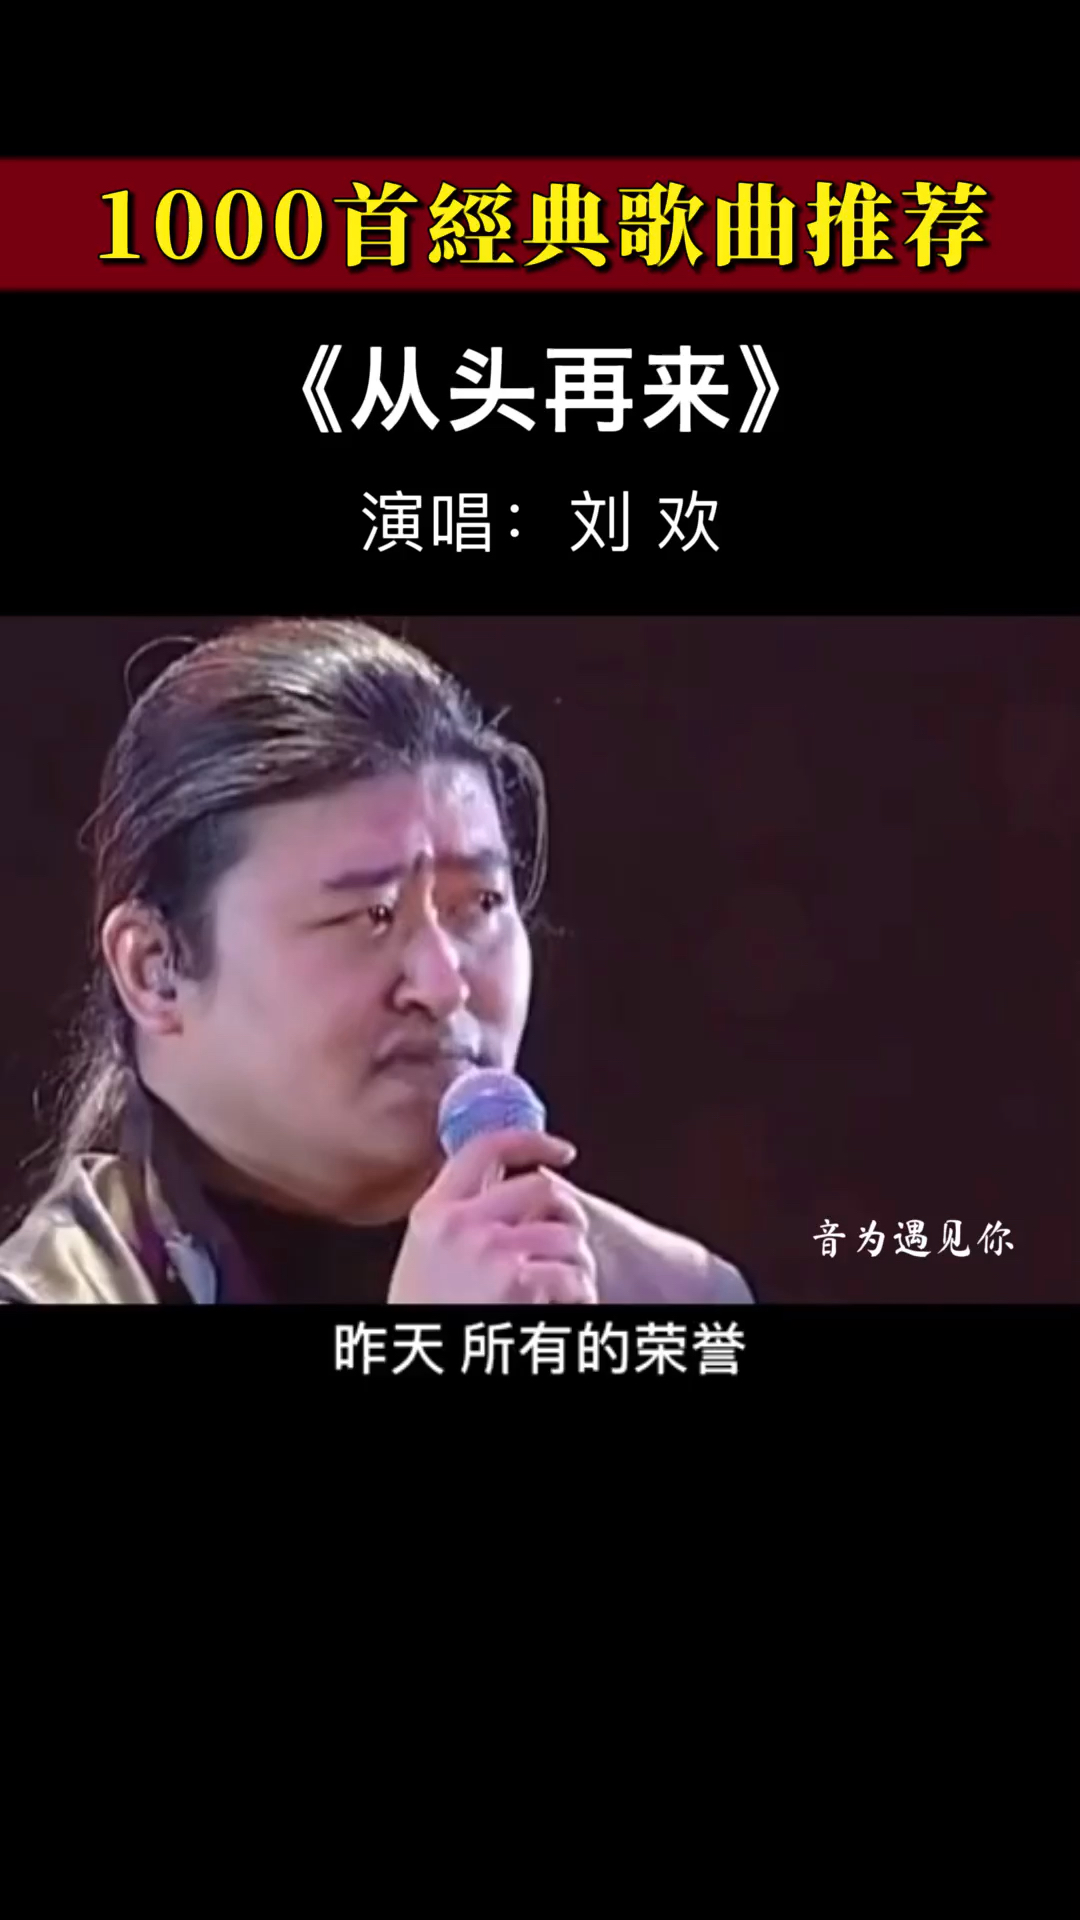 经典老歌刘欢一首的从头再来激昂豪爽的唱腔激励了多少人